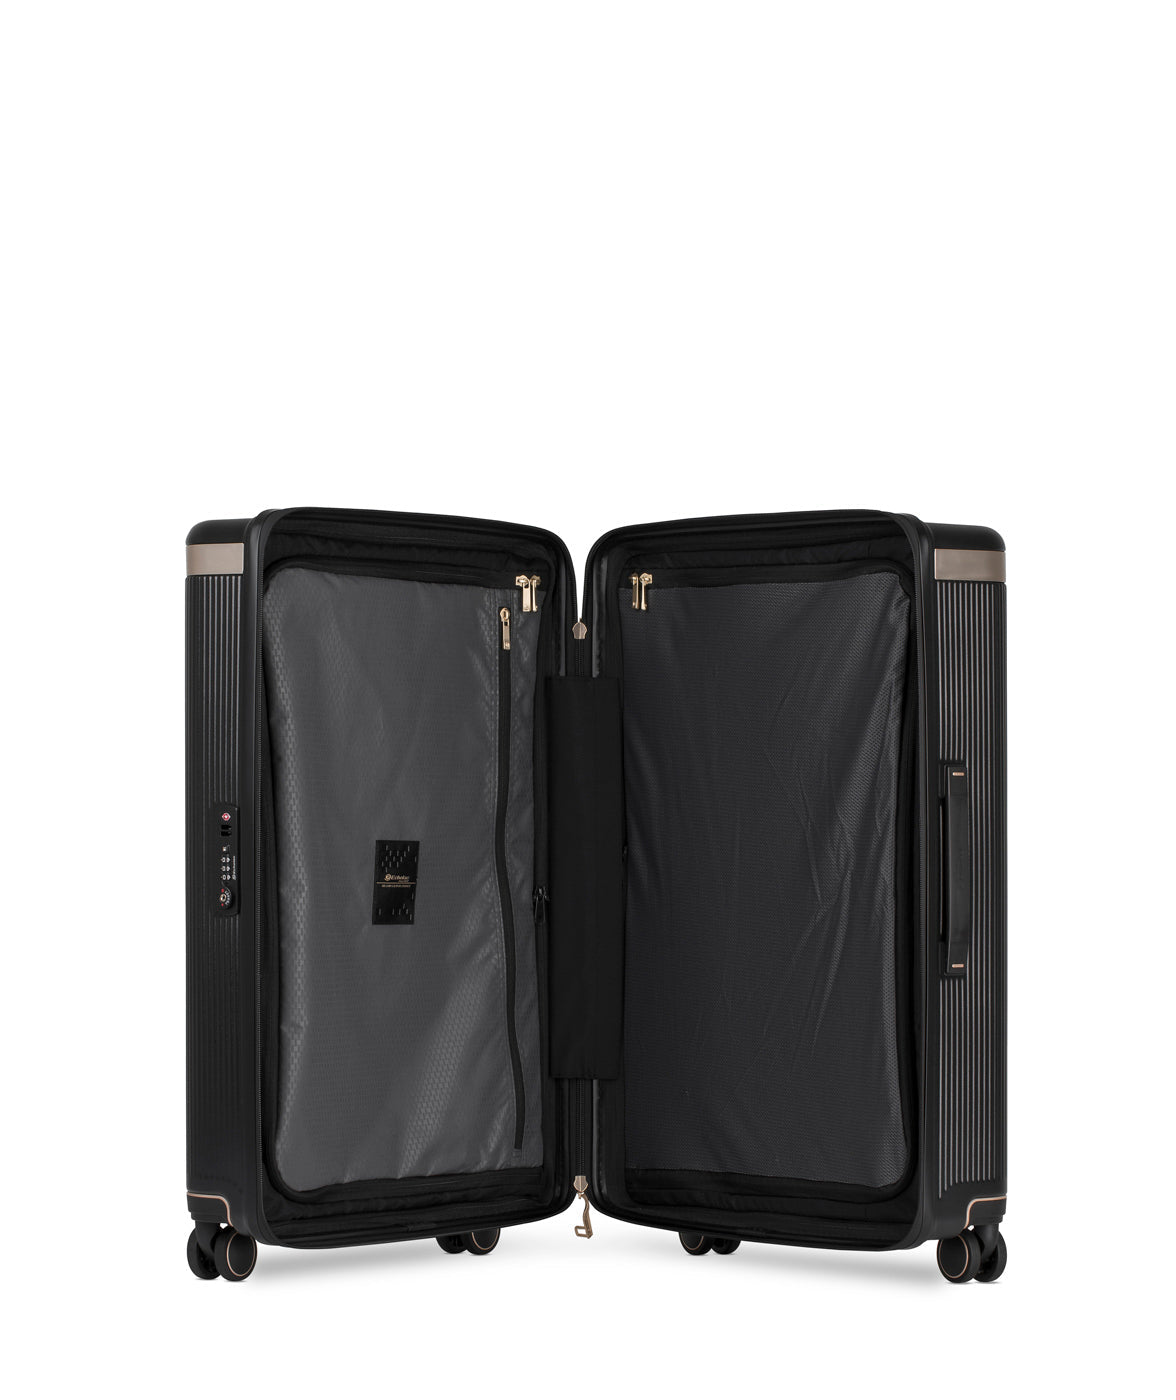 Echolac Dynasty Suitcase, Medium 67 cm, Black offen 